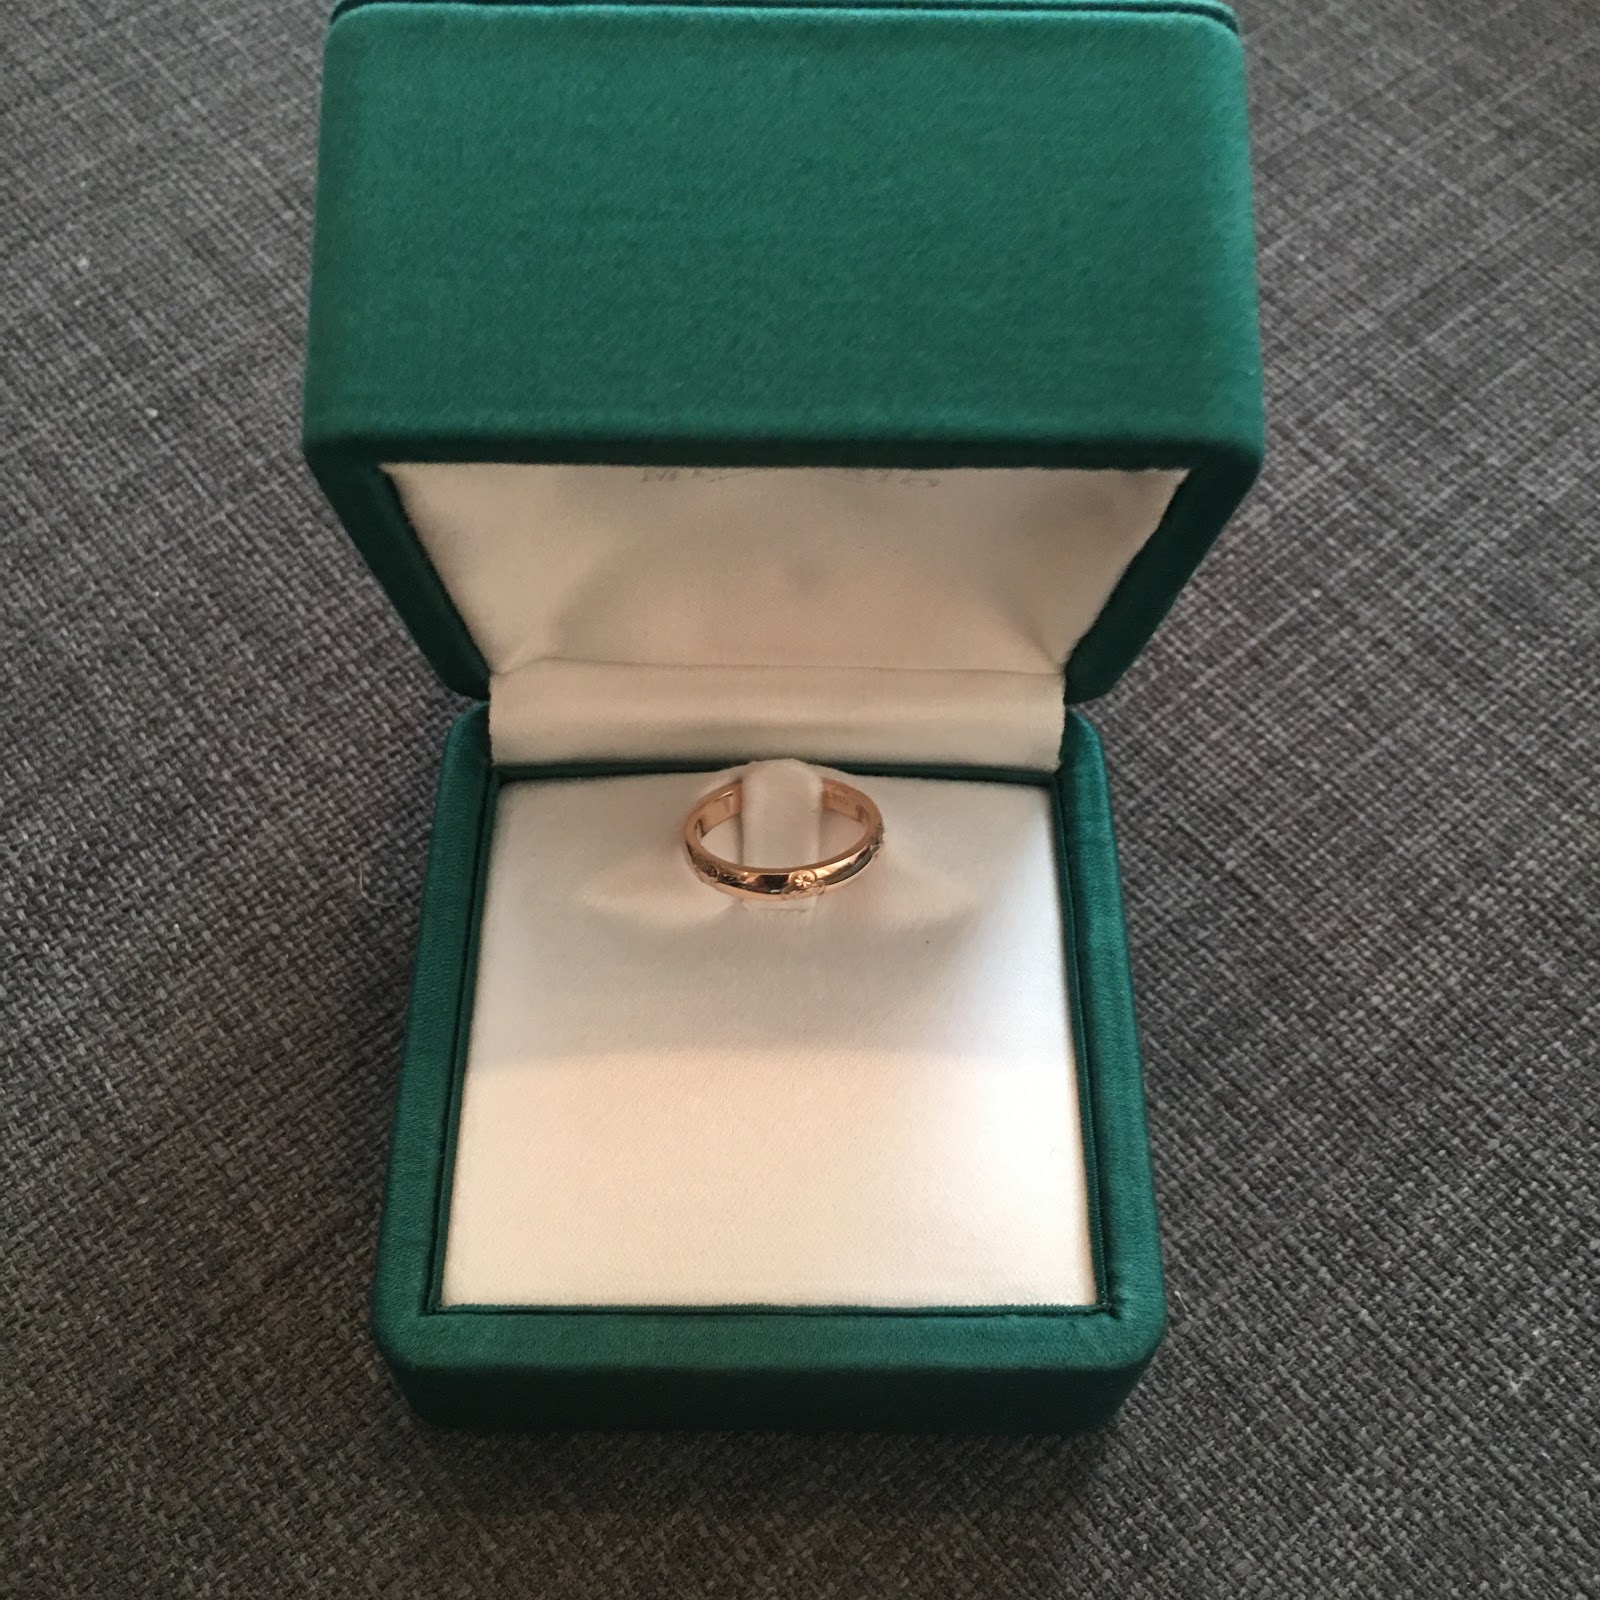 フランス パリ本店から個人輸入 ついに開封 メレリオ ディ メレーの結婚指輪